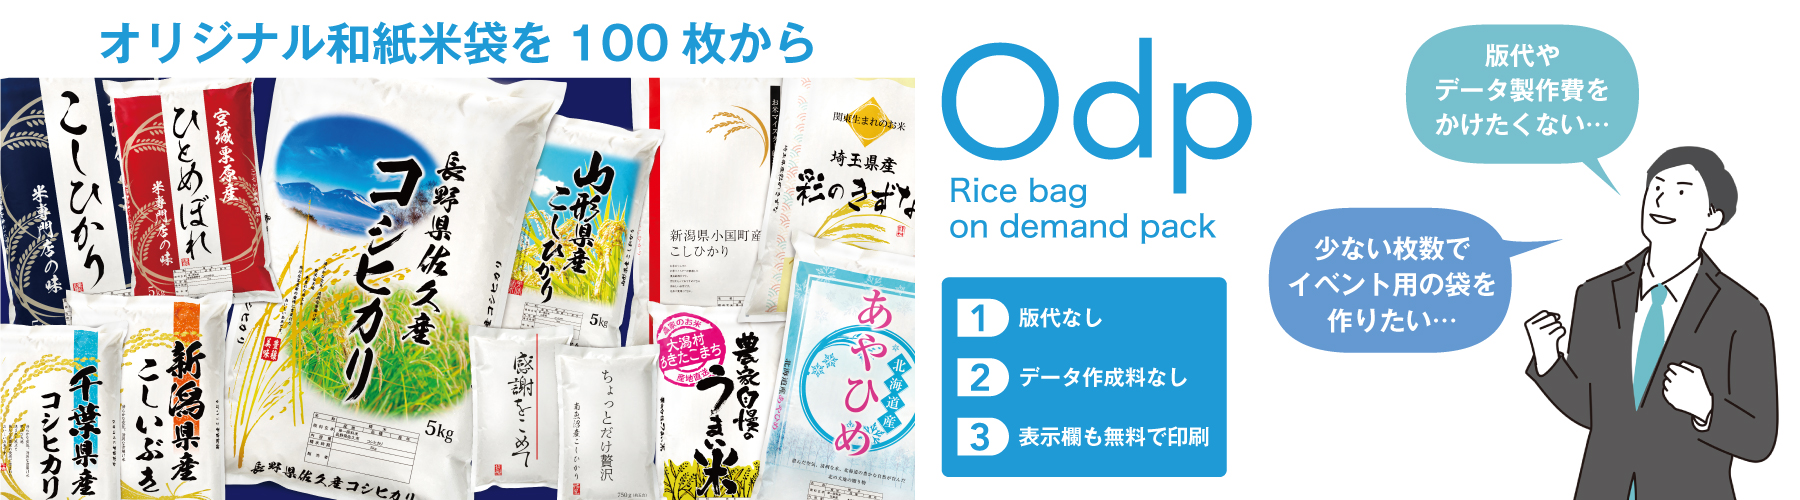 ODP米袋バナー